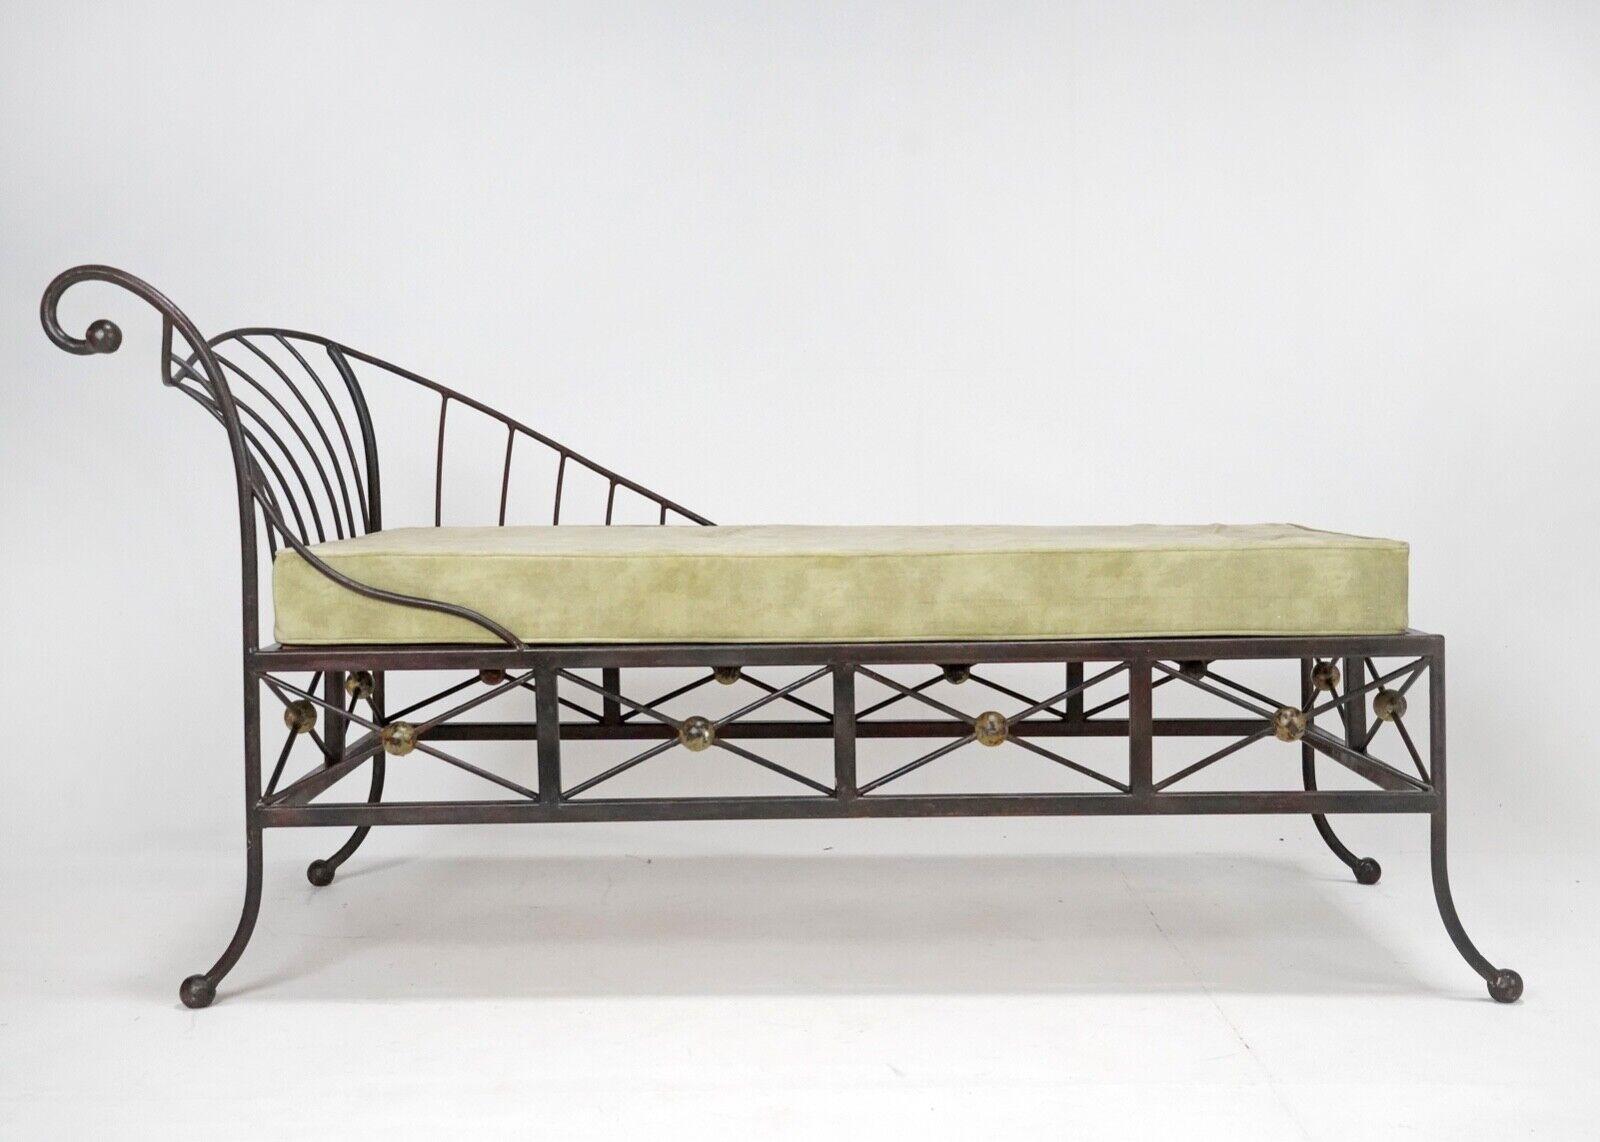 Ein wunderschönes skulpturales Bett aus französischem Stahl.
Hergestellt aus Stahl, den wir lackiert haben, damit er nicht rostet. 
Das Kissen ist neu mit einem moosgrünen Samt überzogen. 
Ein wirklich einzigartiges Stück.
Circa 1960er